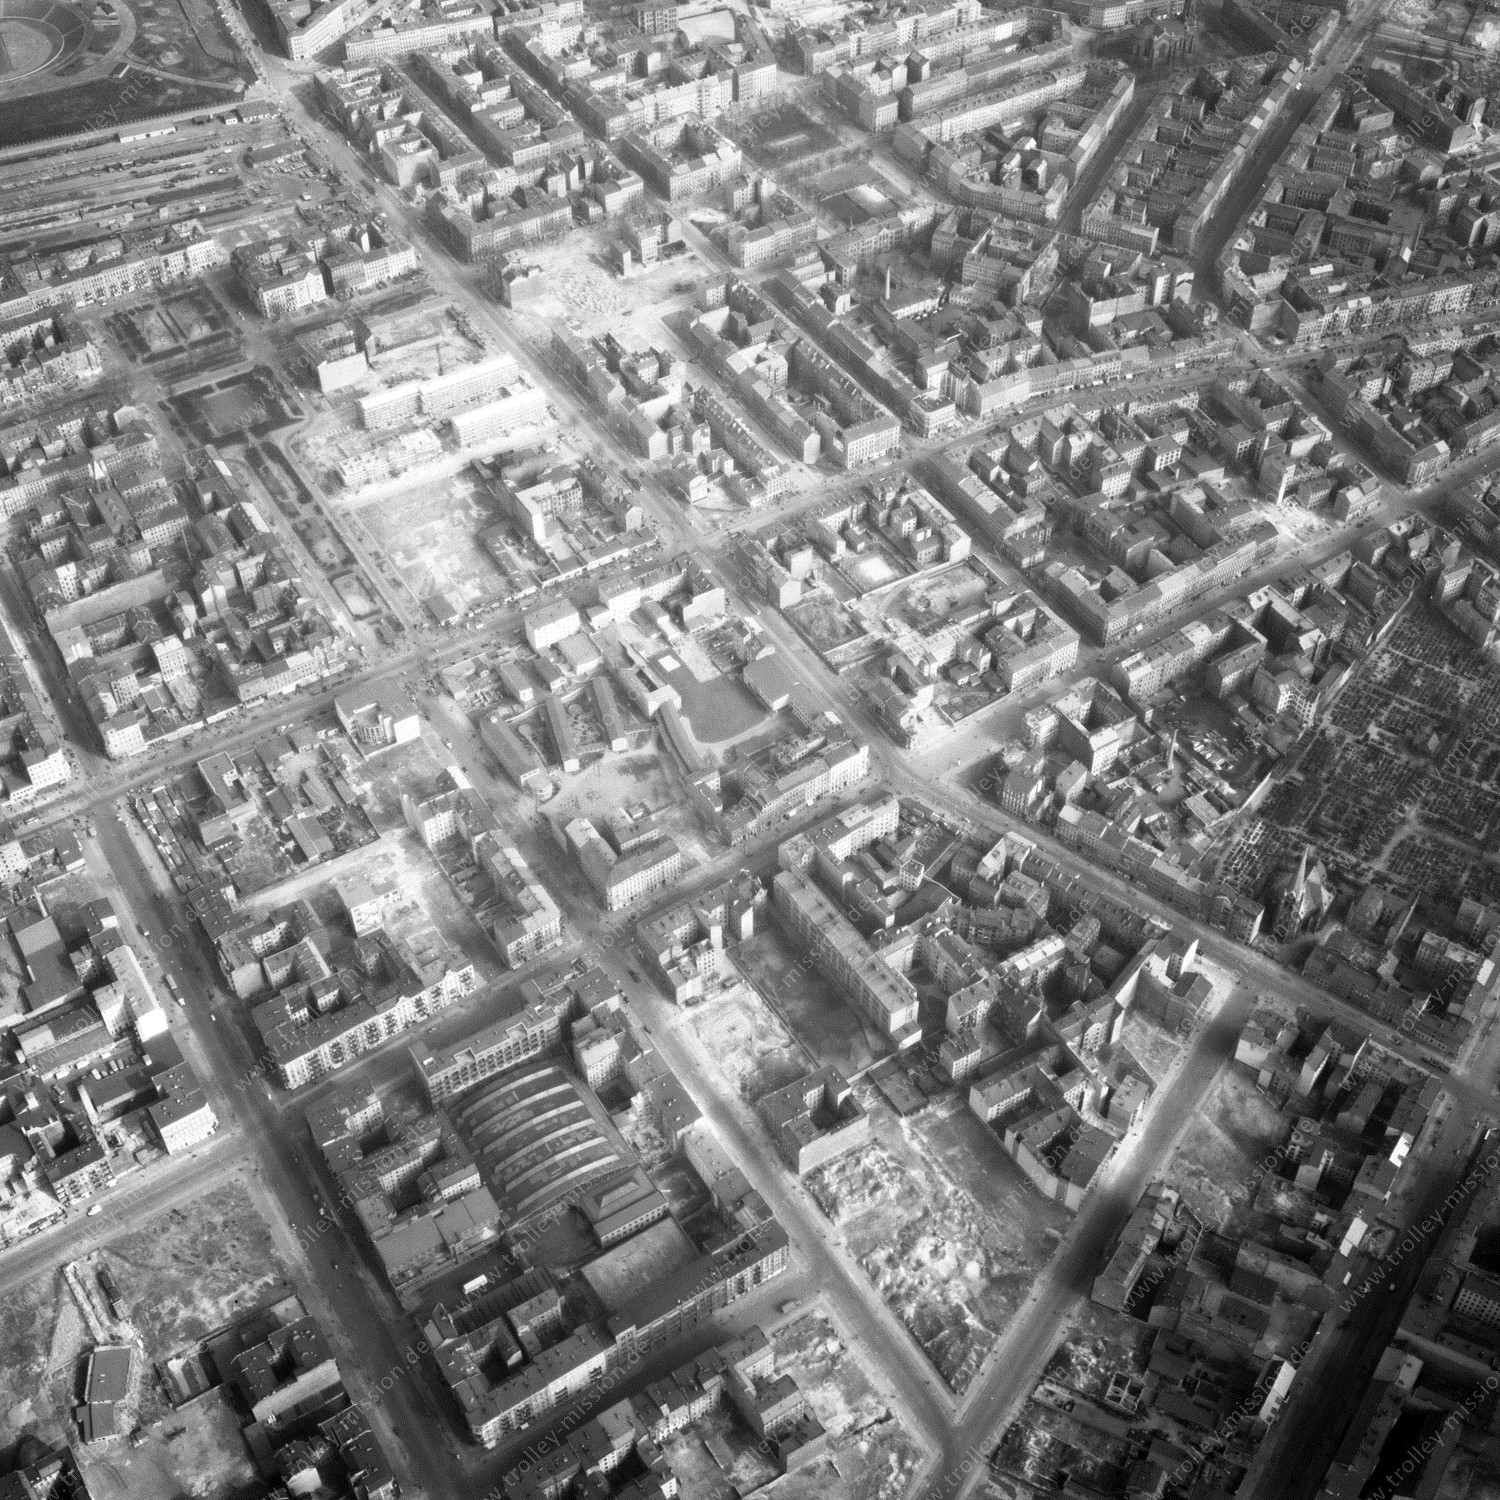 Alte Fotos und Luftbilder von Berlin - Luftbildaufnahme Nr. 01 - Historische Luftaufnahmen von West-Berlin aus dem Jahr 1954 - Flugstrecke Sierra